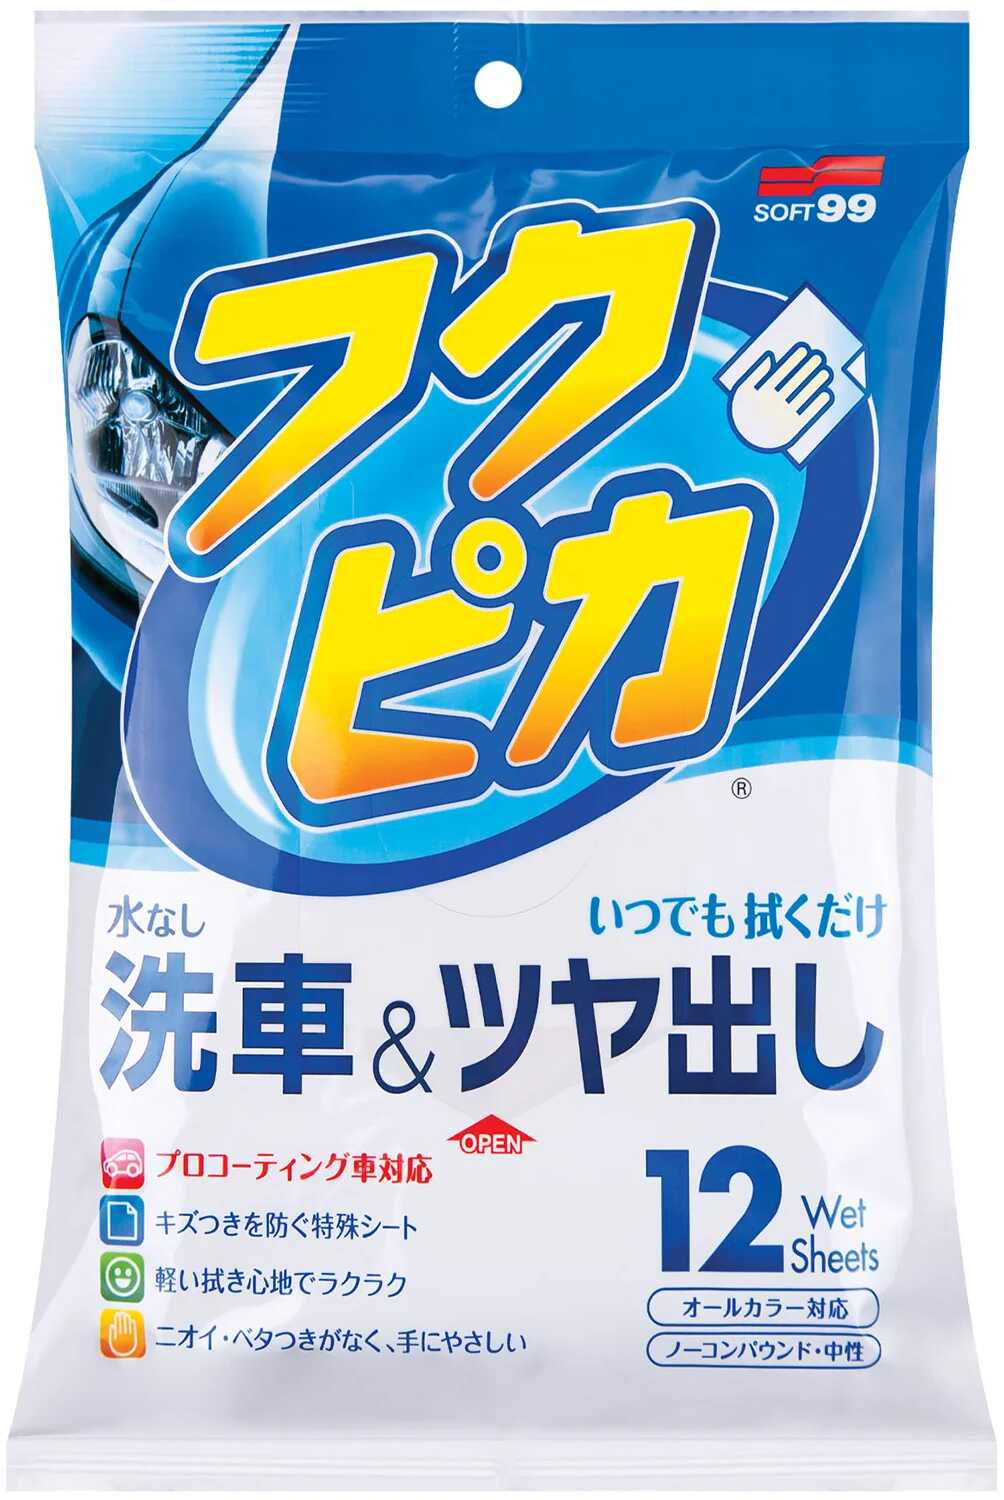 Soft99 Fukupika Wash & Wax Wipes  chusteczki do czyszczenie elementów zewnętrznych